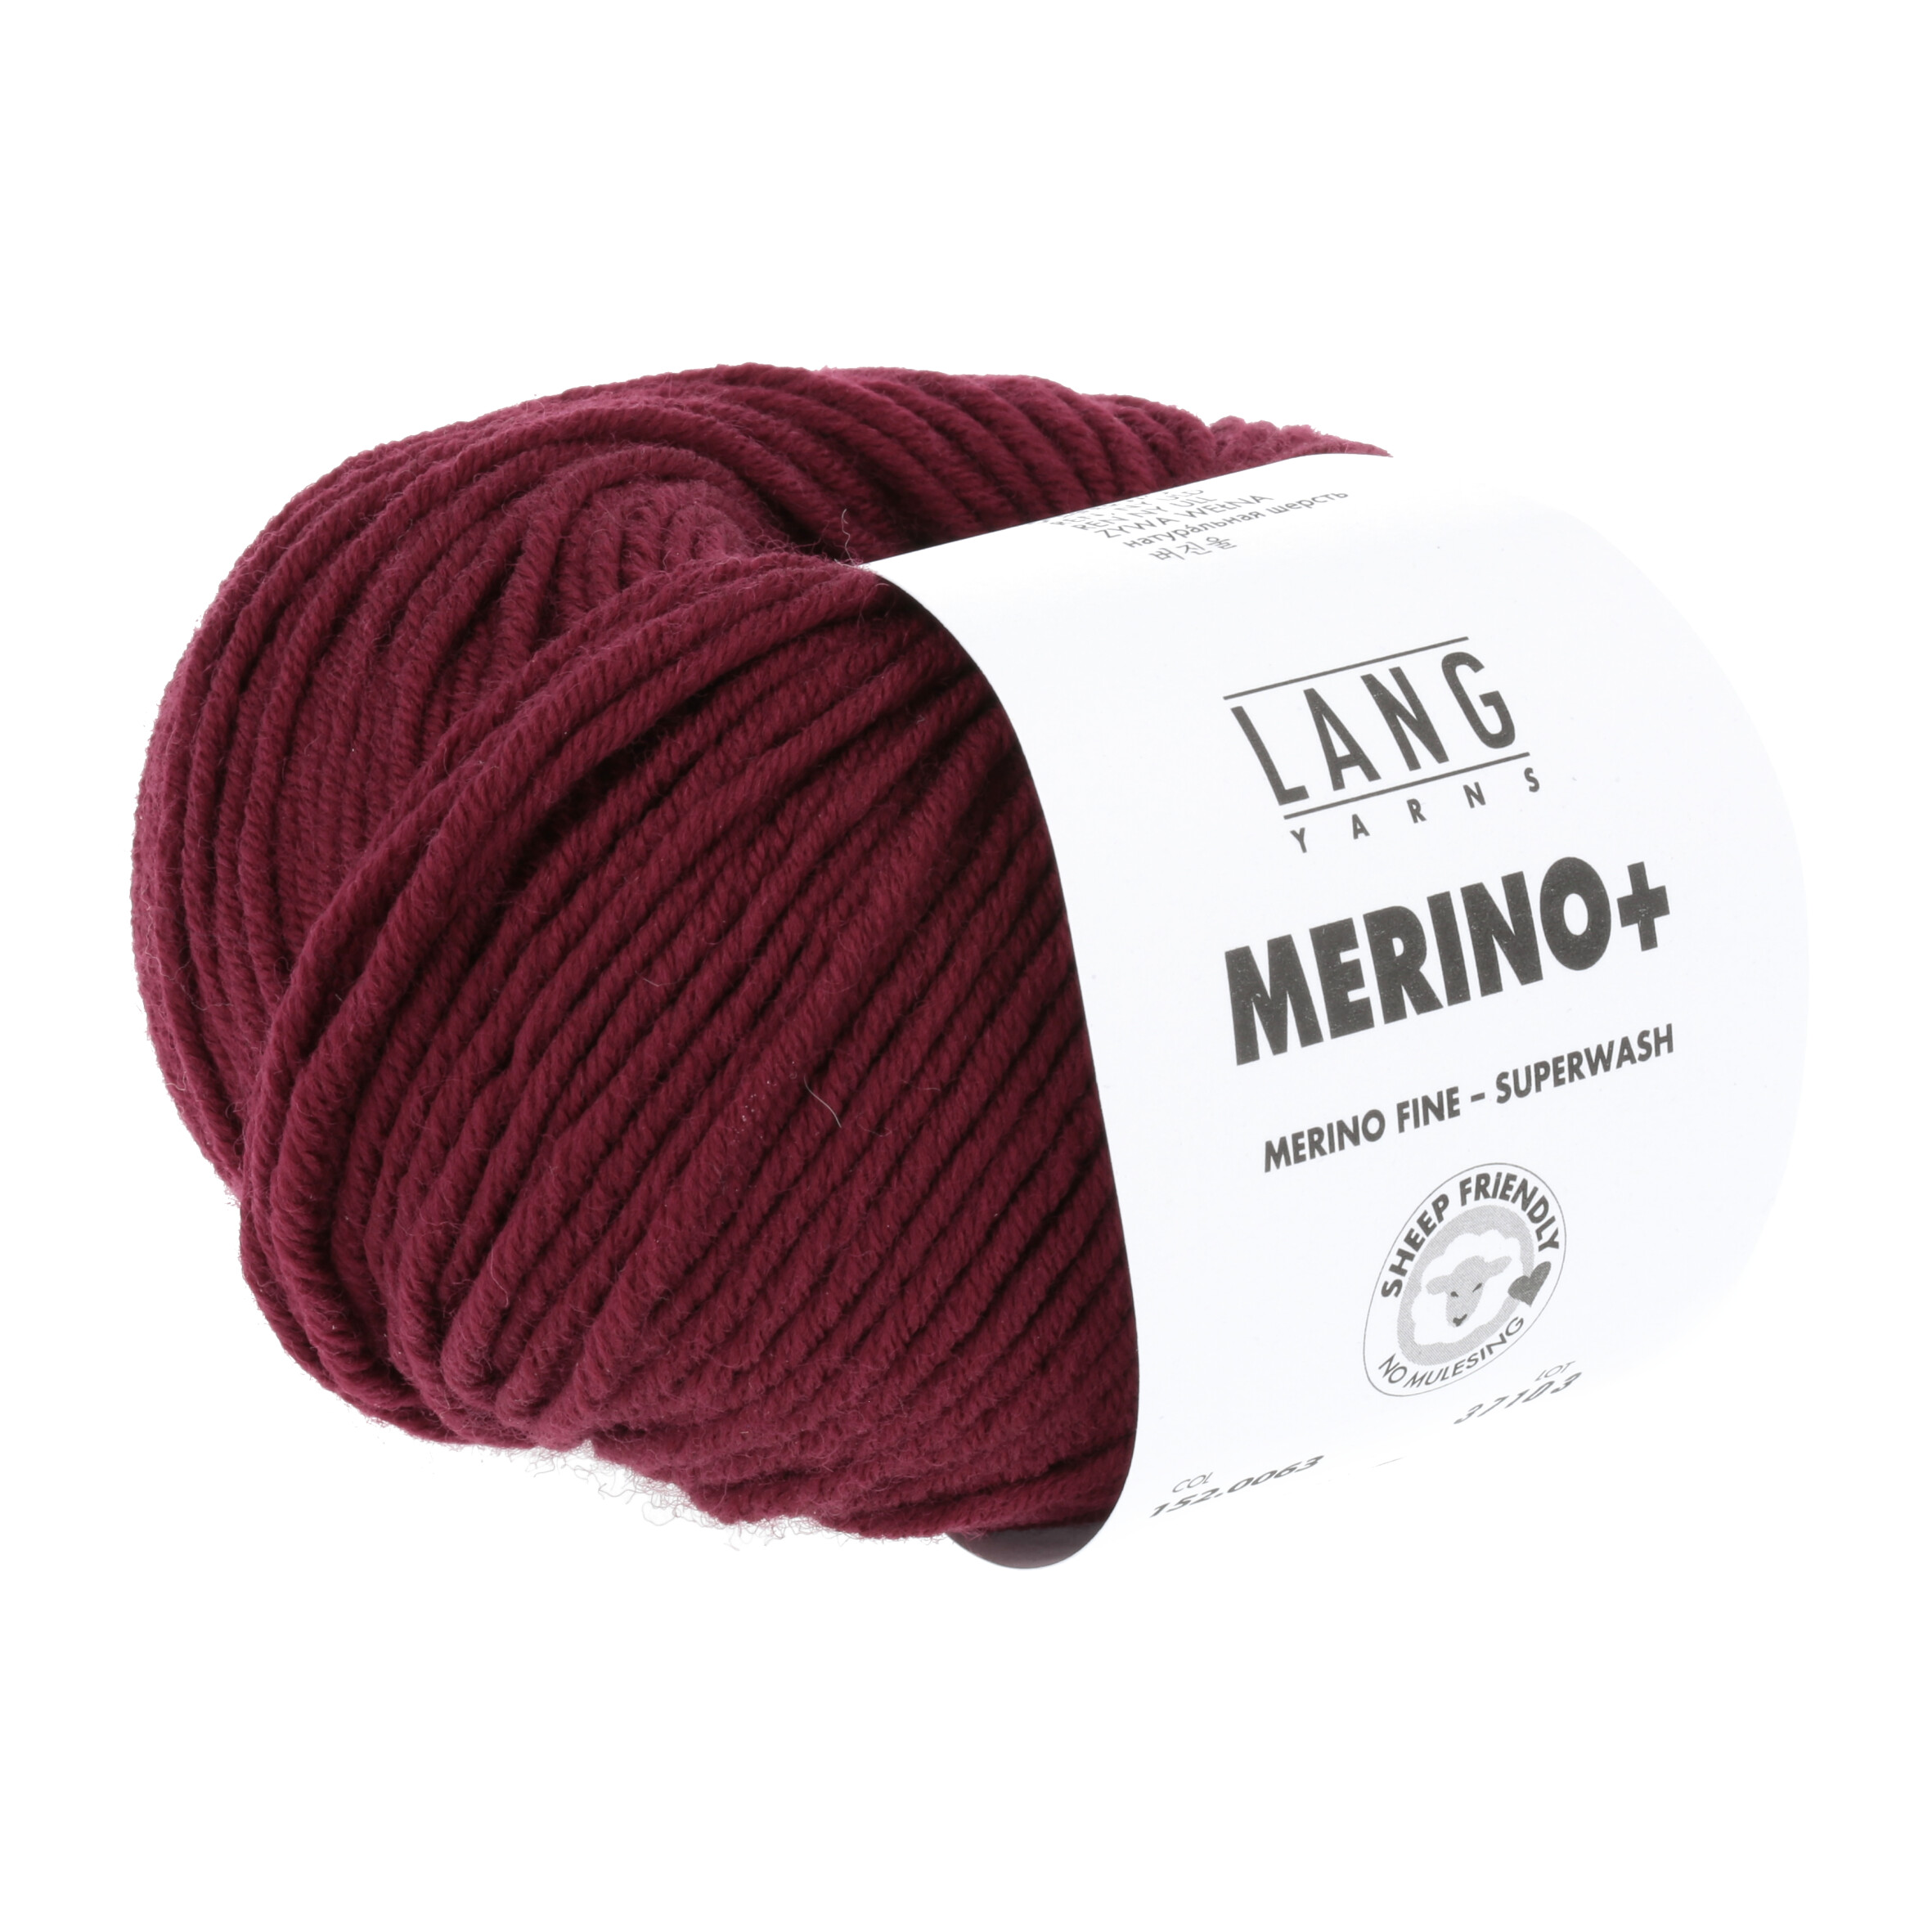 LANG MERINO + 50GR 0063 WEINROT